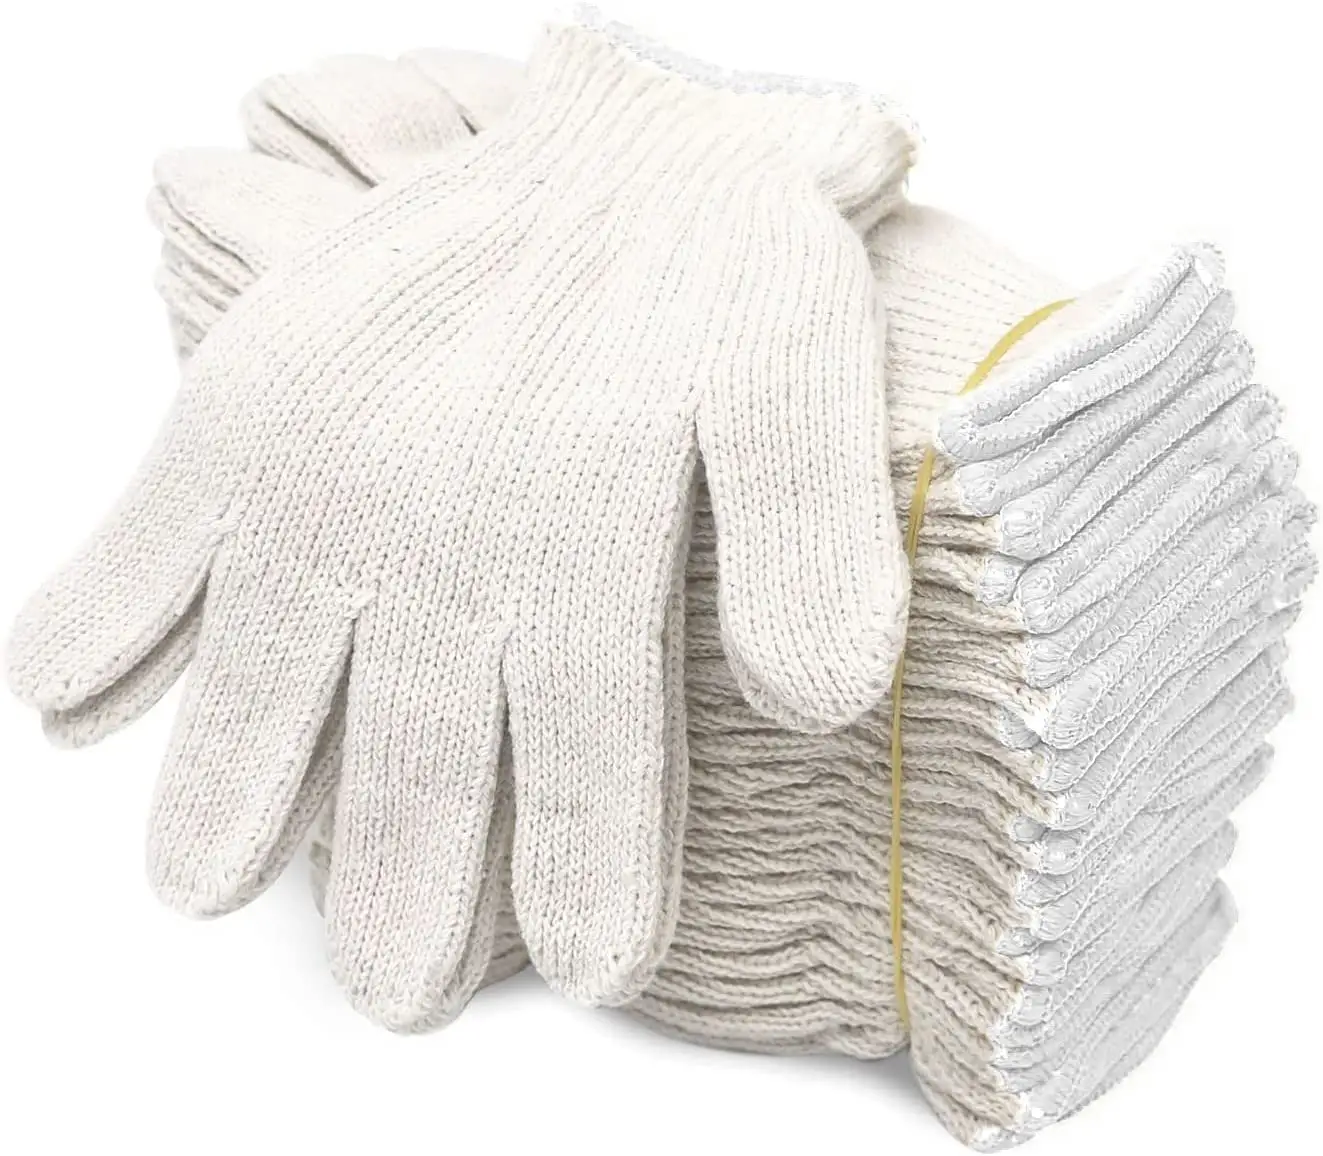 建設用ガーデニング用綿作業用手袋男性用および女性用安全手袋ポーター用手袋